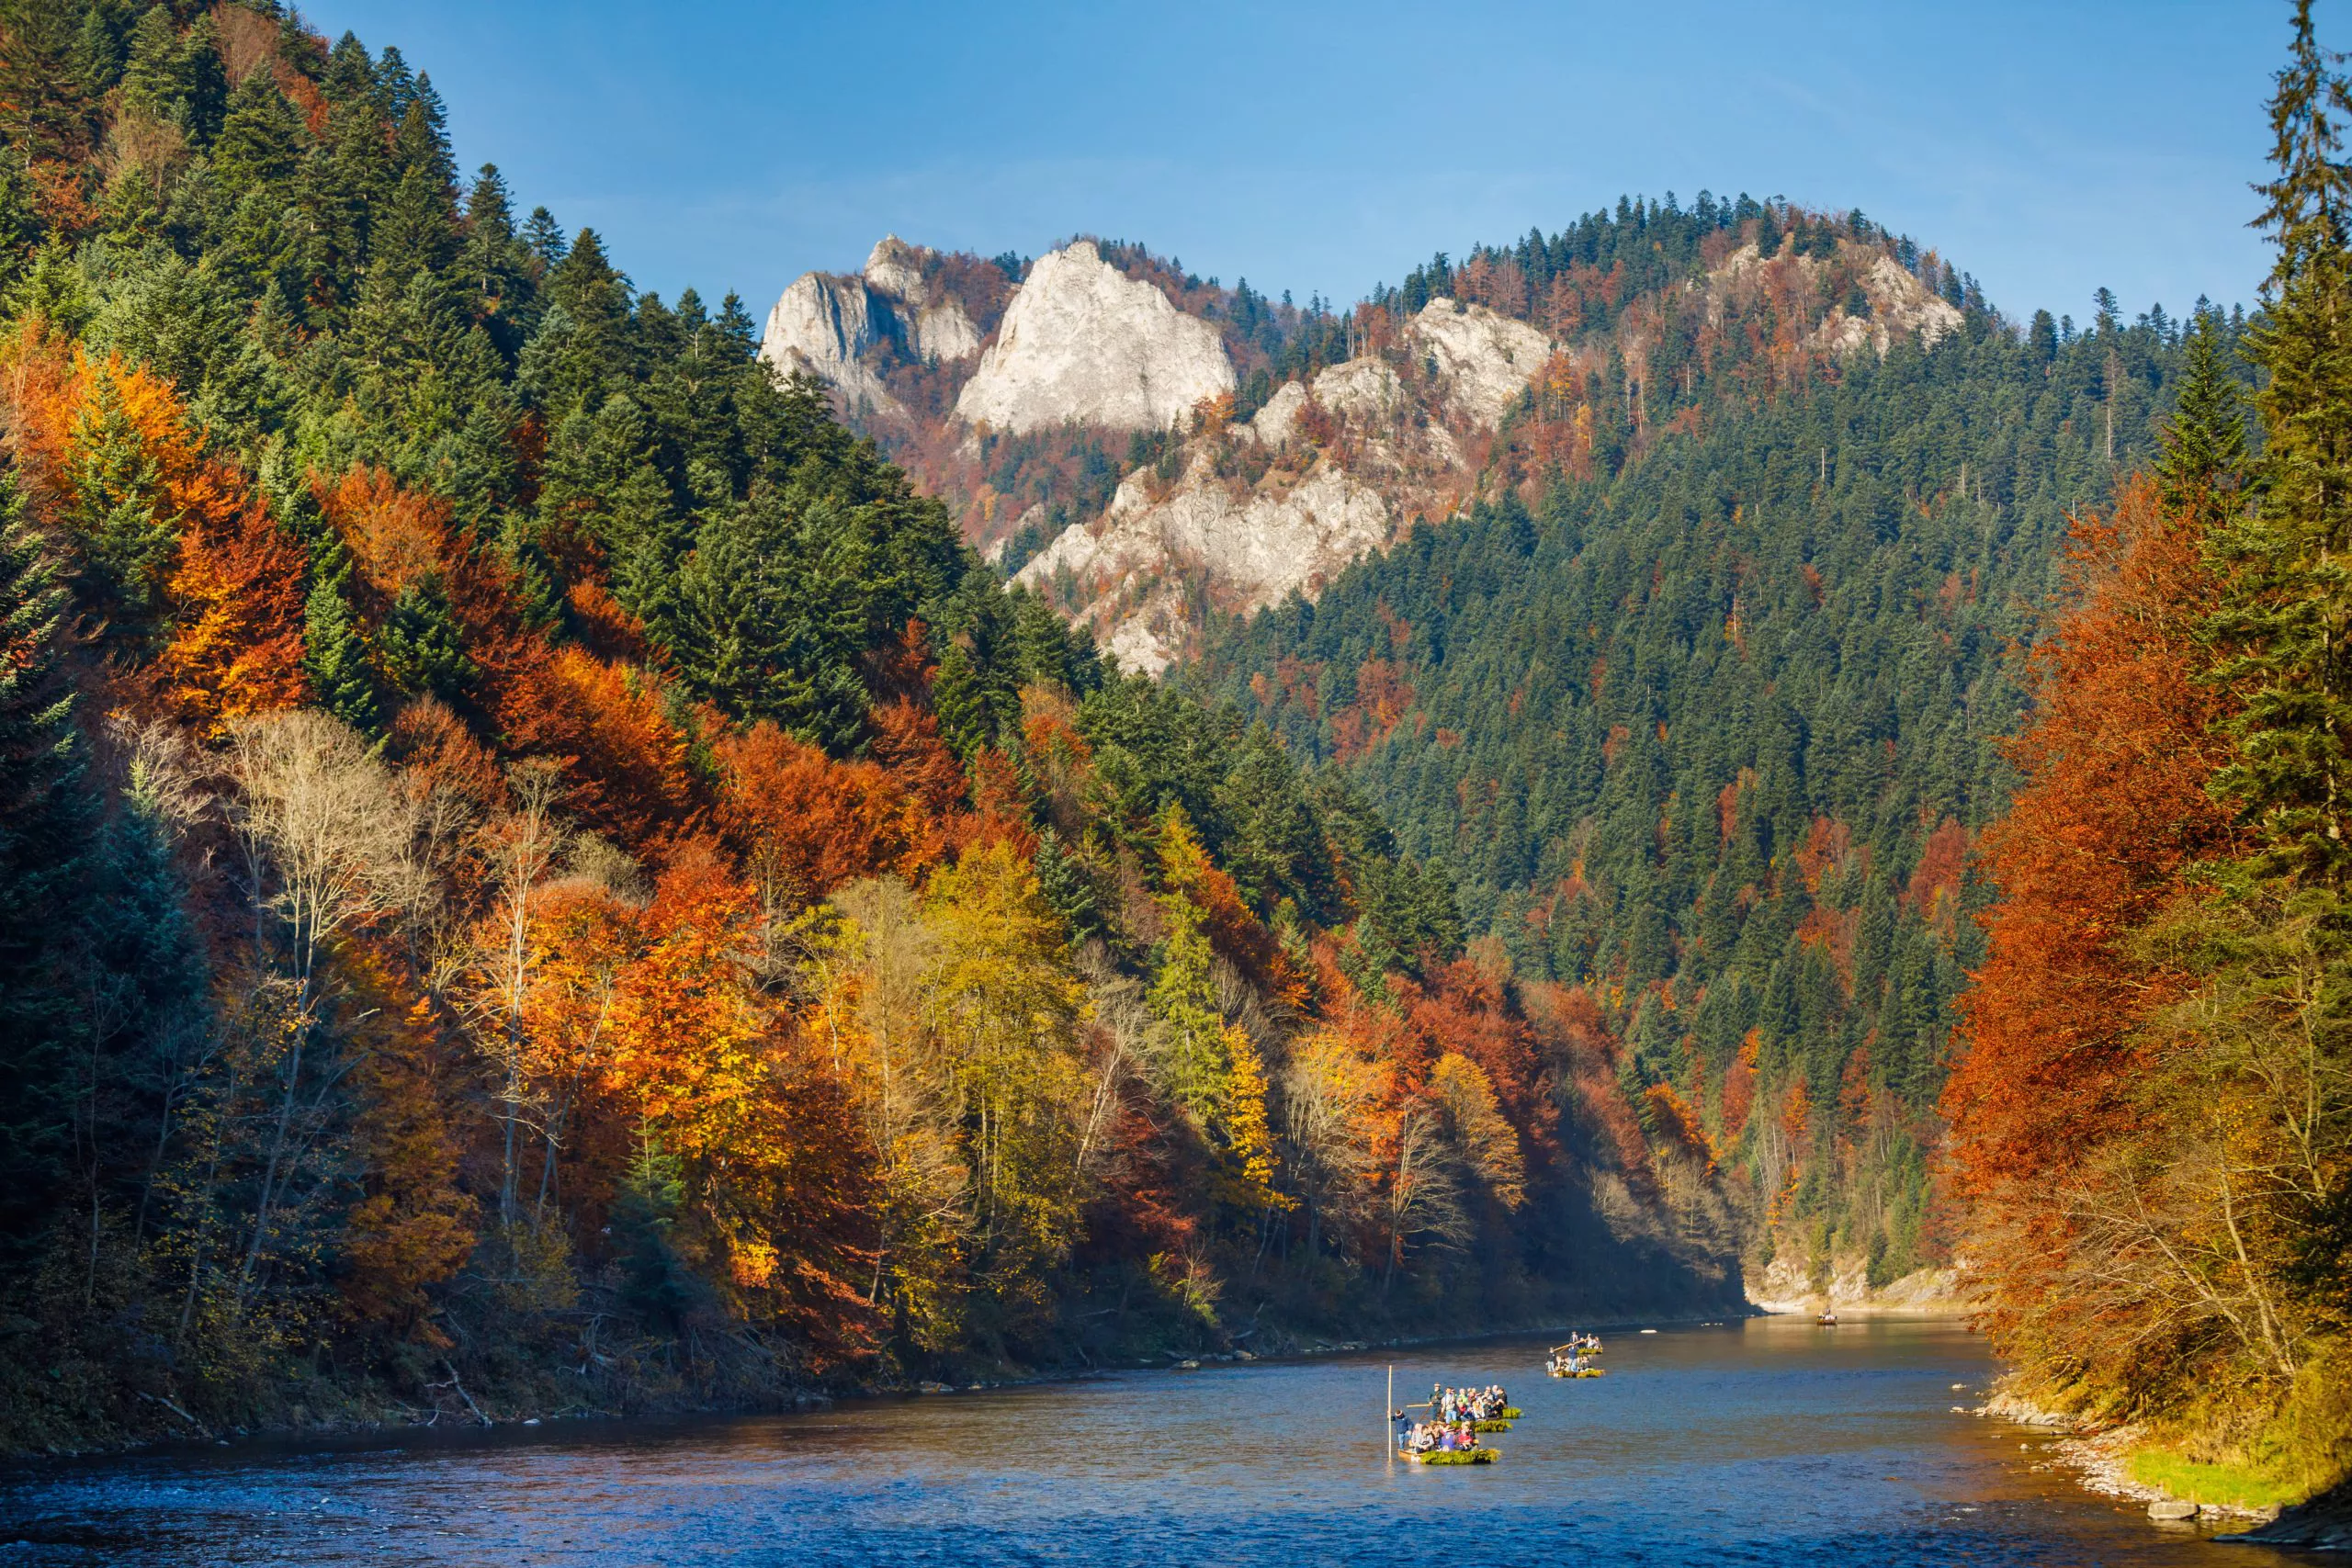 Ein Blick auf mehrere Raftingboote, die den Fluss Dunajec hinunterfahren. Den Fluss umgeben Bäume mit buntem Herbstlaub. Oben, im Hintergrund, sieht man die felsigen Pieninen-Gipfel. Der Himmel ist wunderschön blau und wolkenlos.